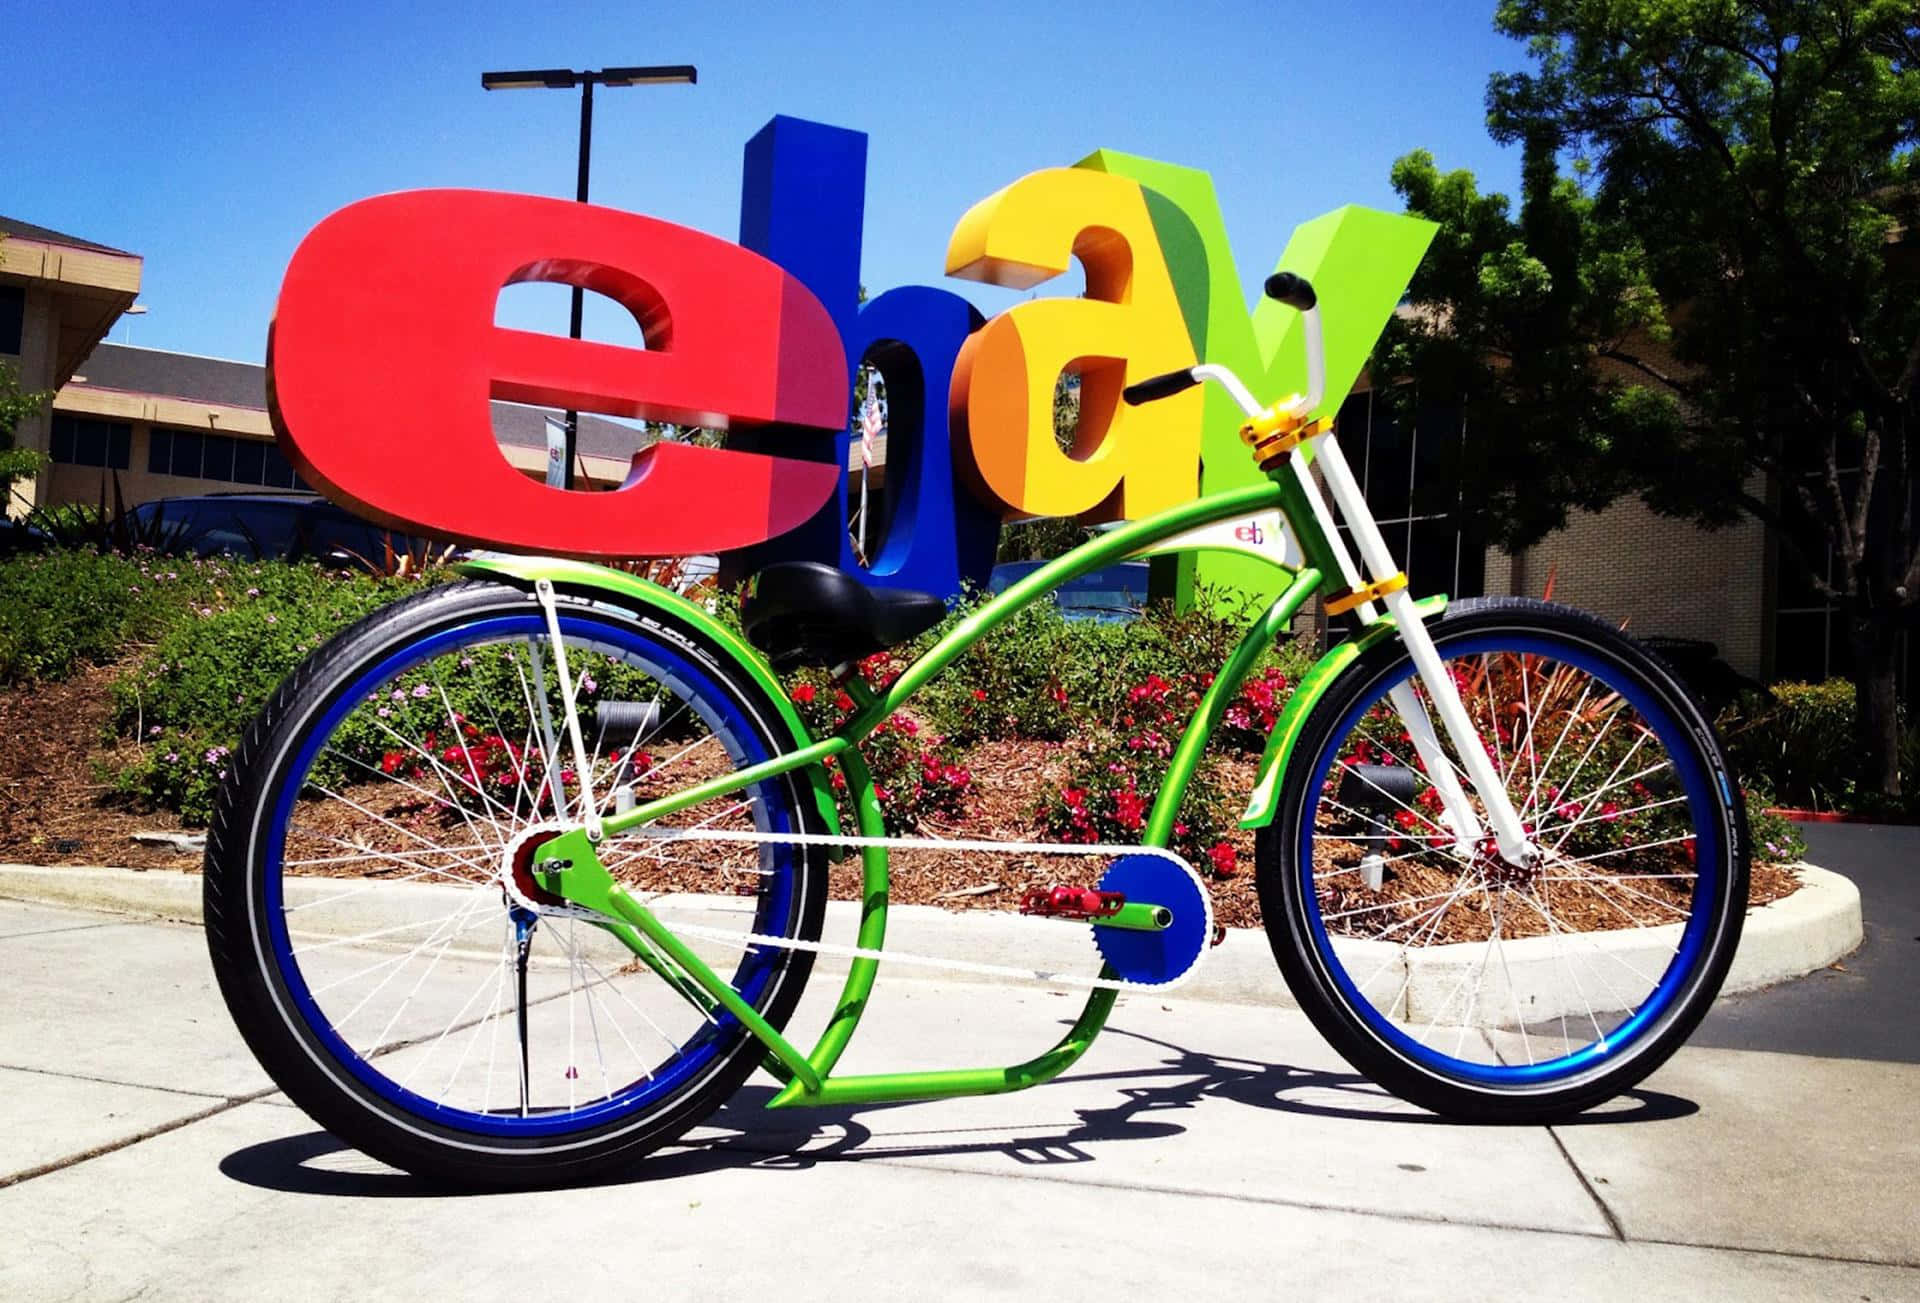 Ebay Uk Logo With Bike Background